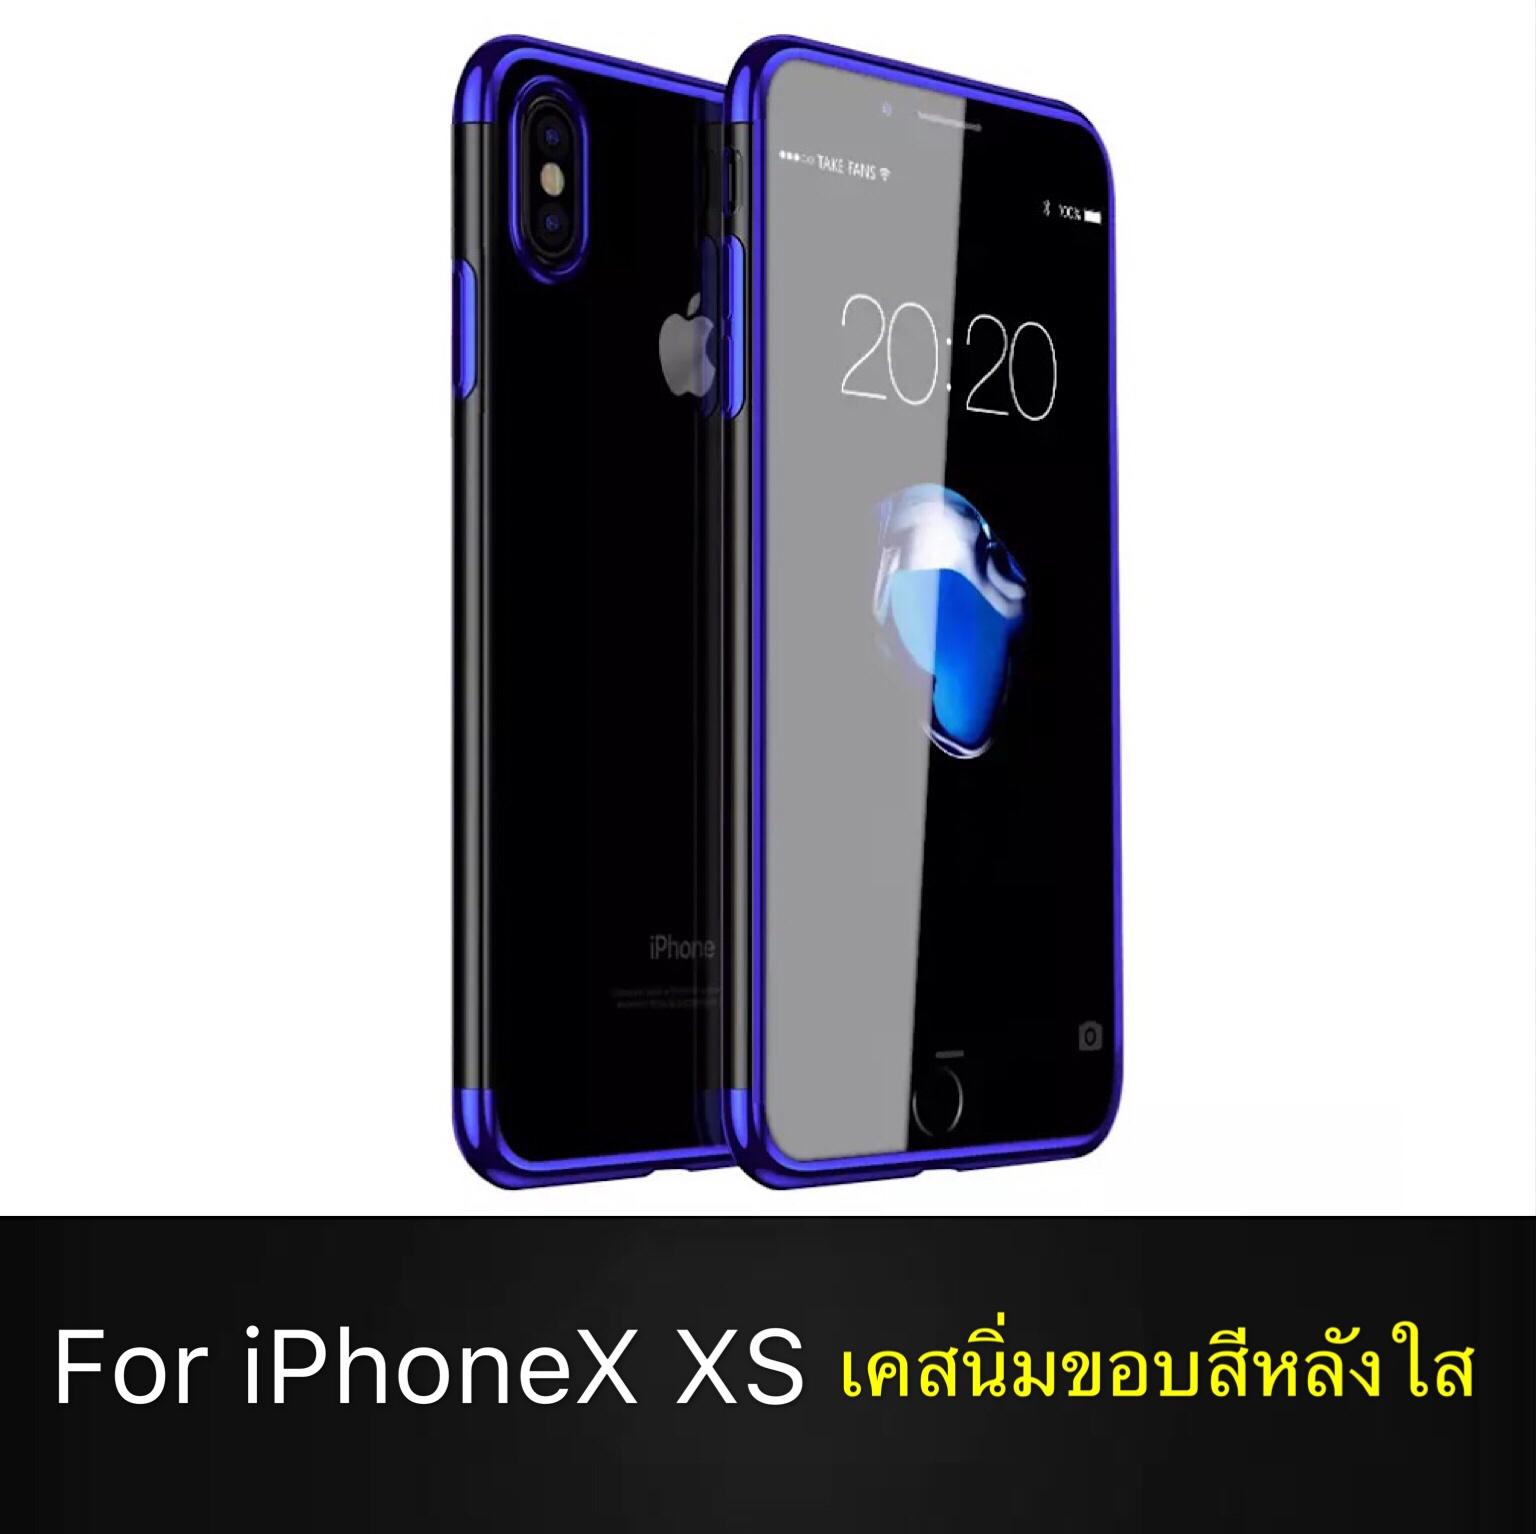 พร้อมส่ง Case ไอโฟน Case iPhoneX iPhoneXS เคสซิลิโคน ขอบสีหลังใส เคสนิ่ม สำหรับรุ่น iPhone X iPhone XS